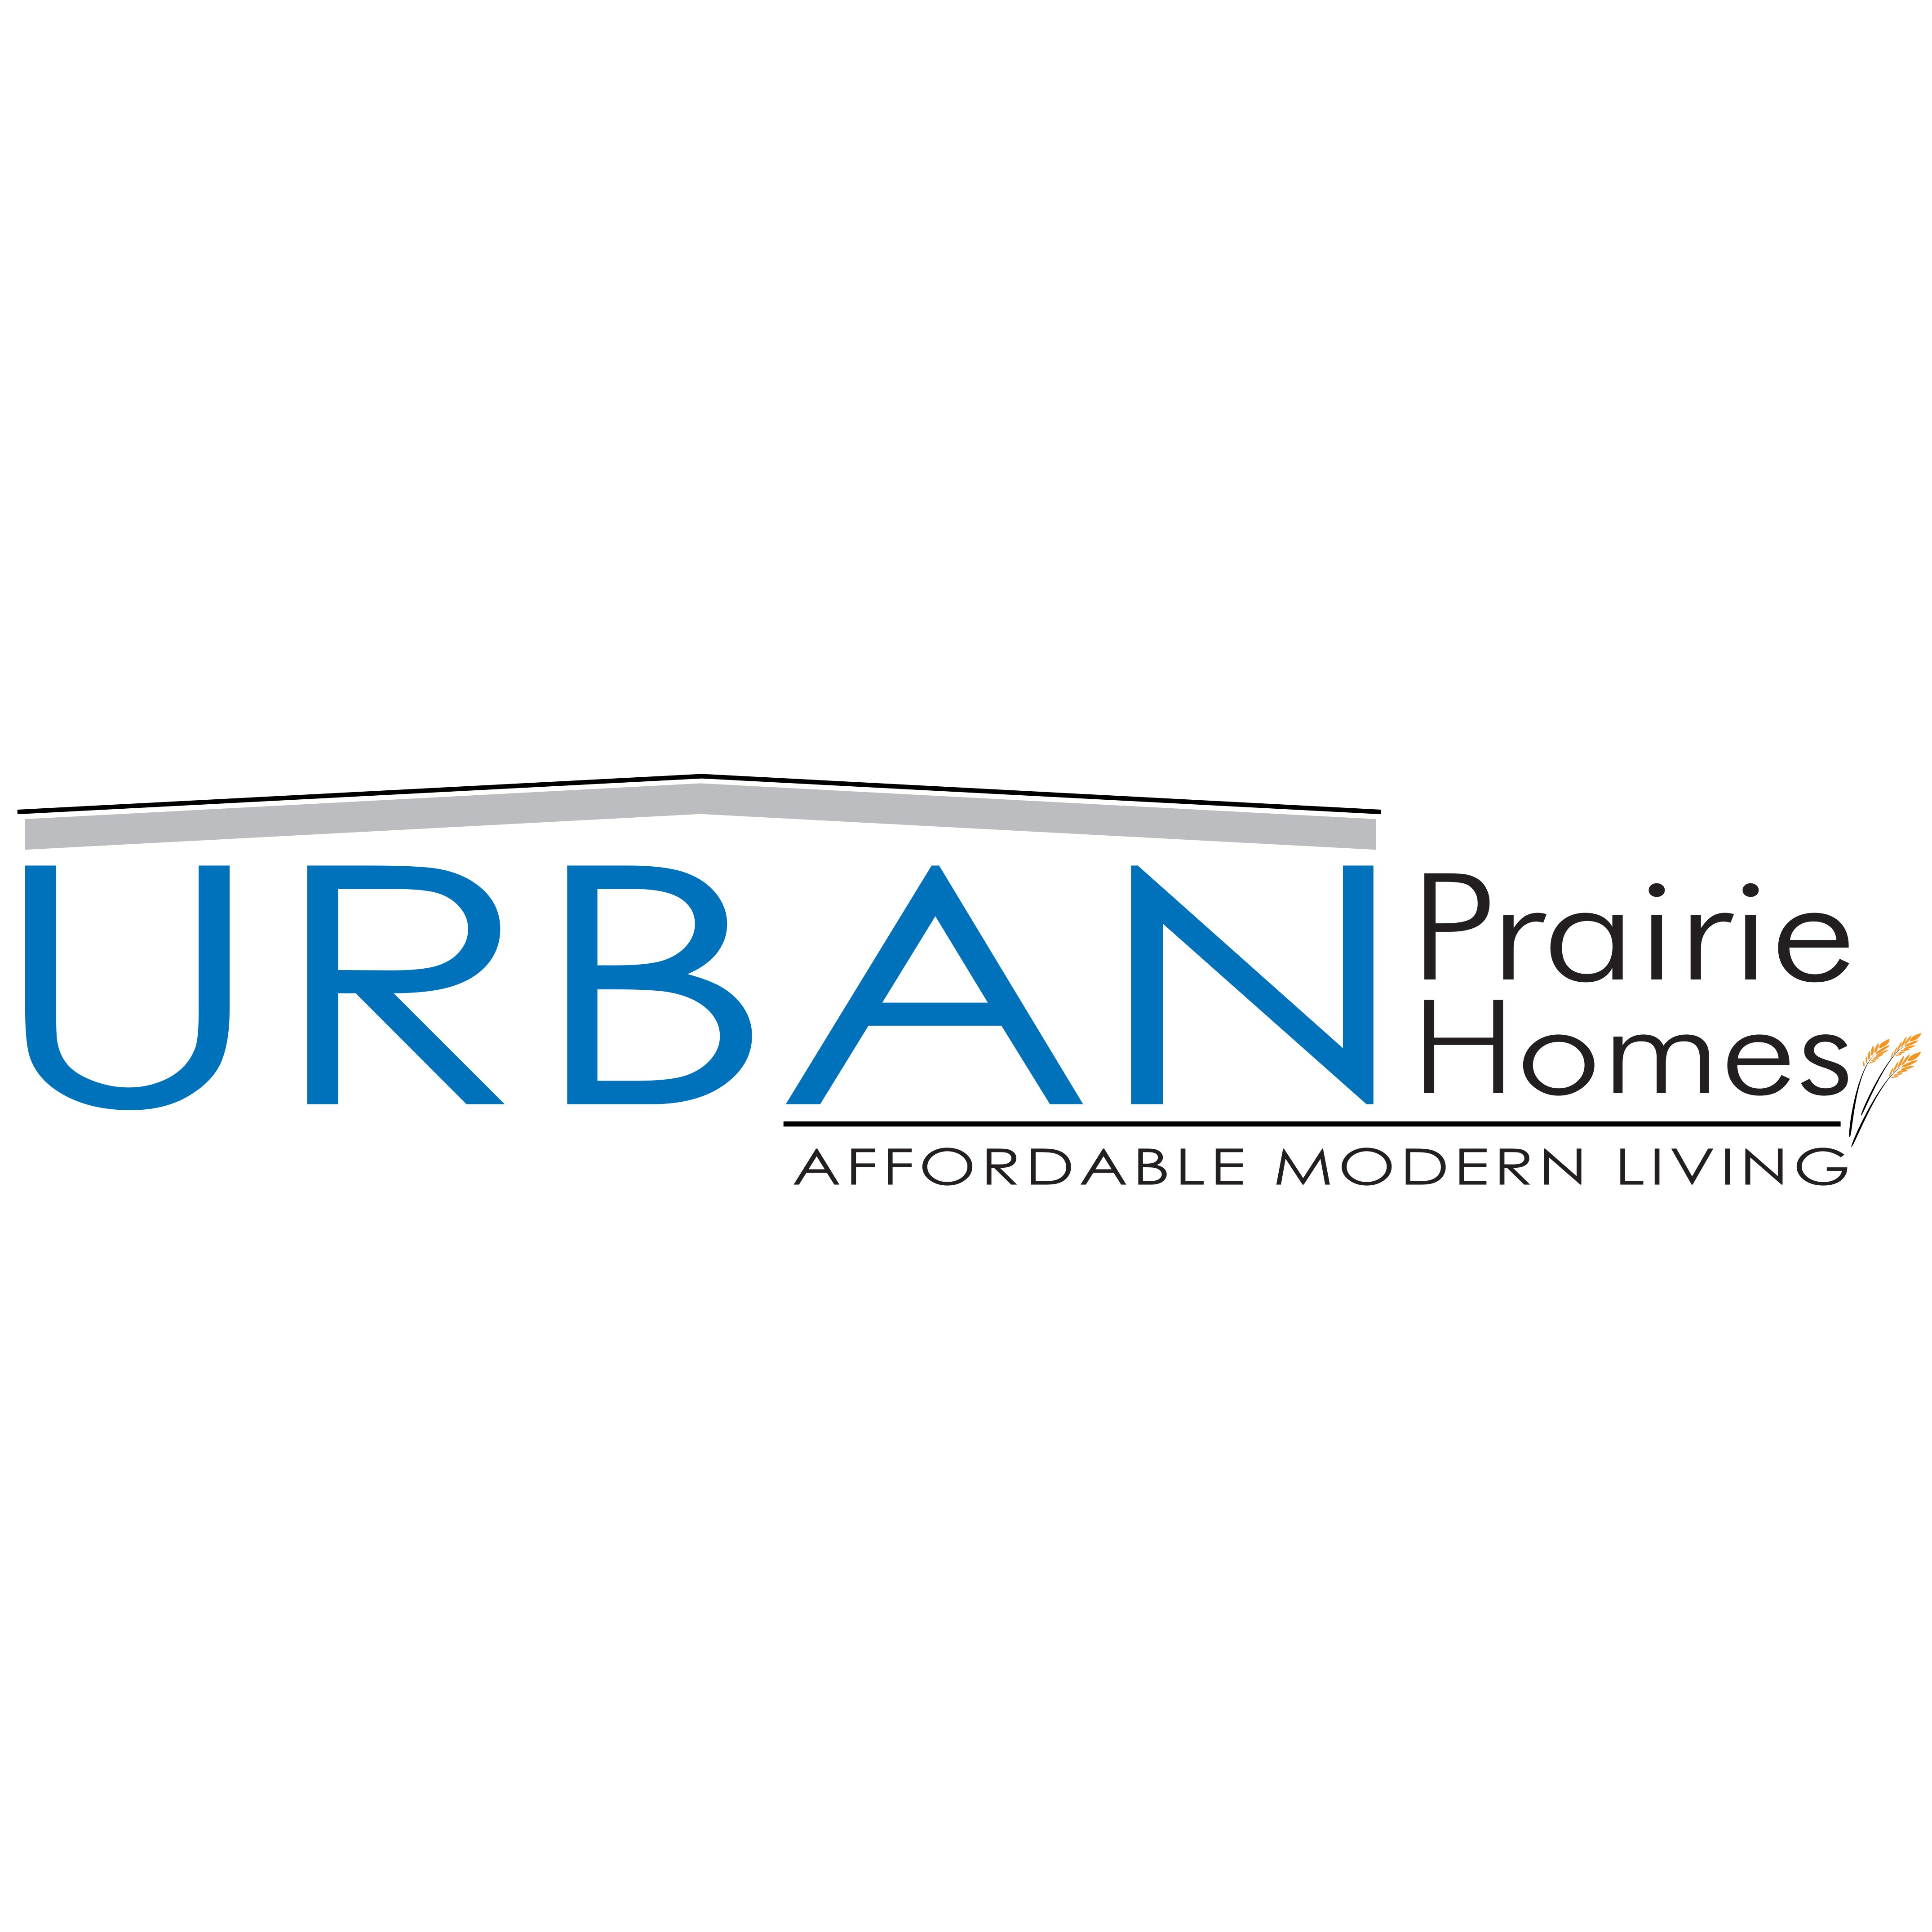 Urban Prairie Homes